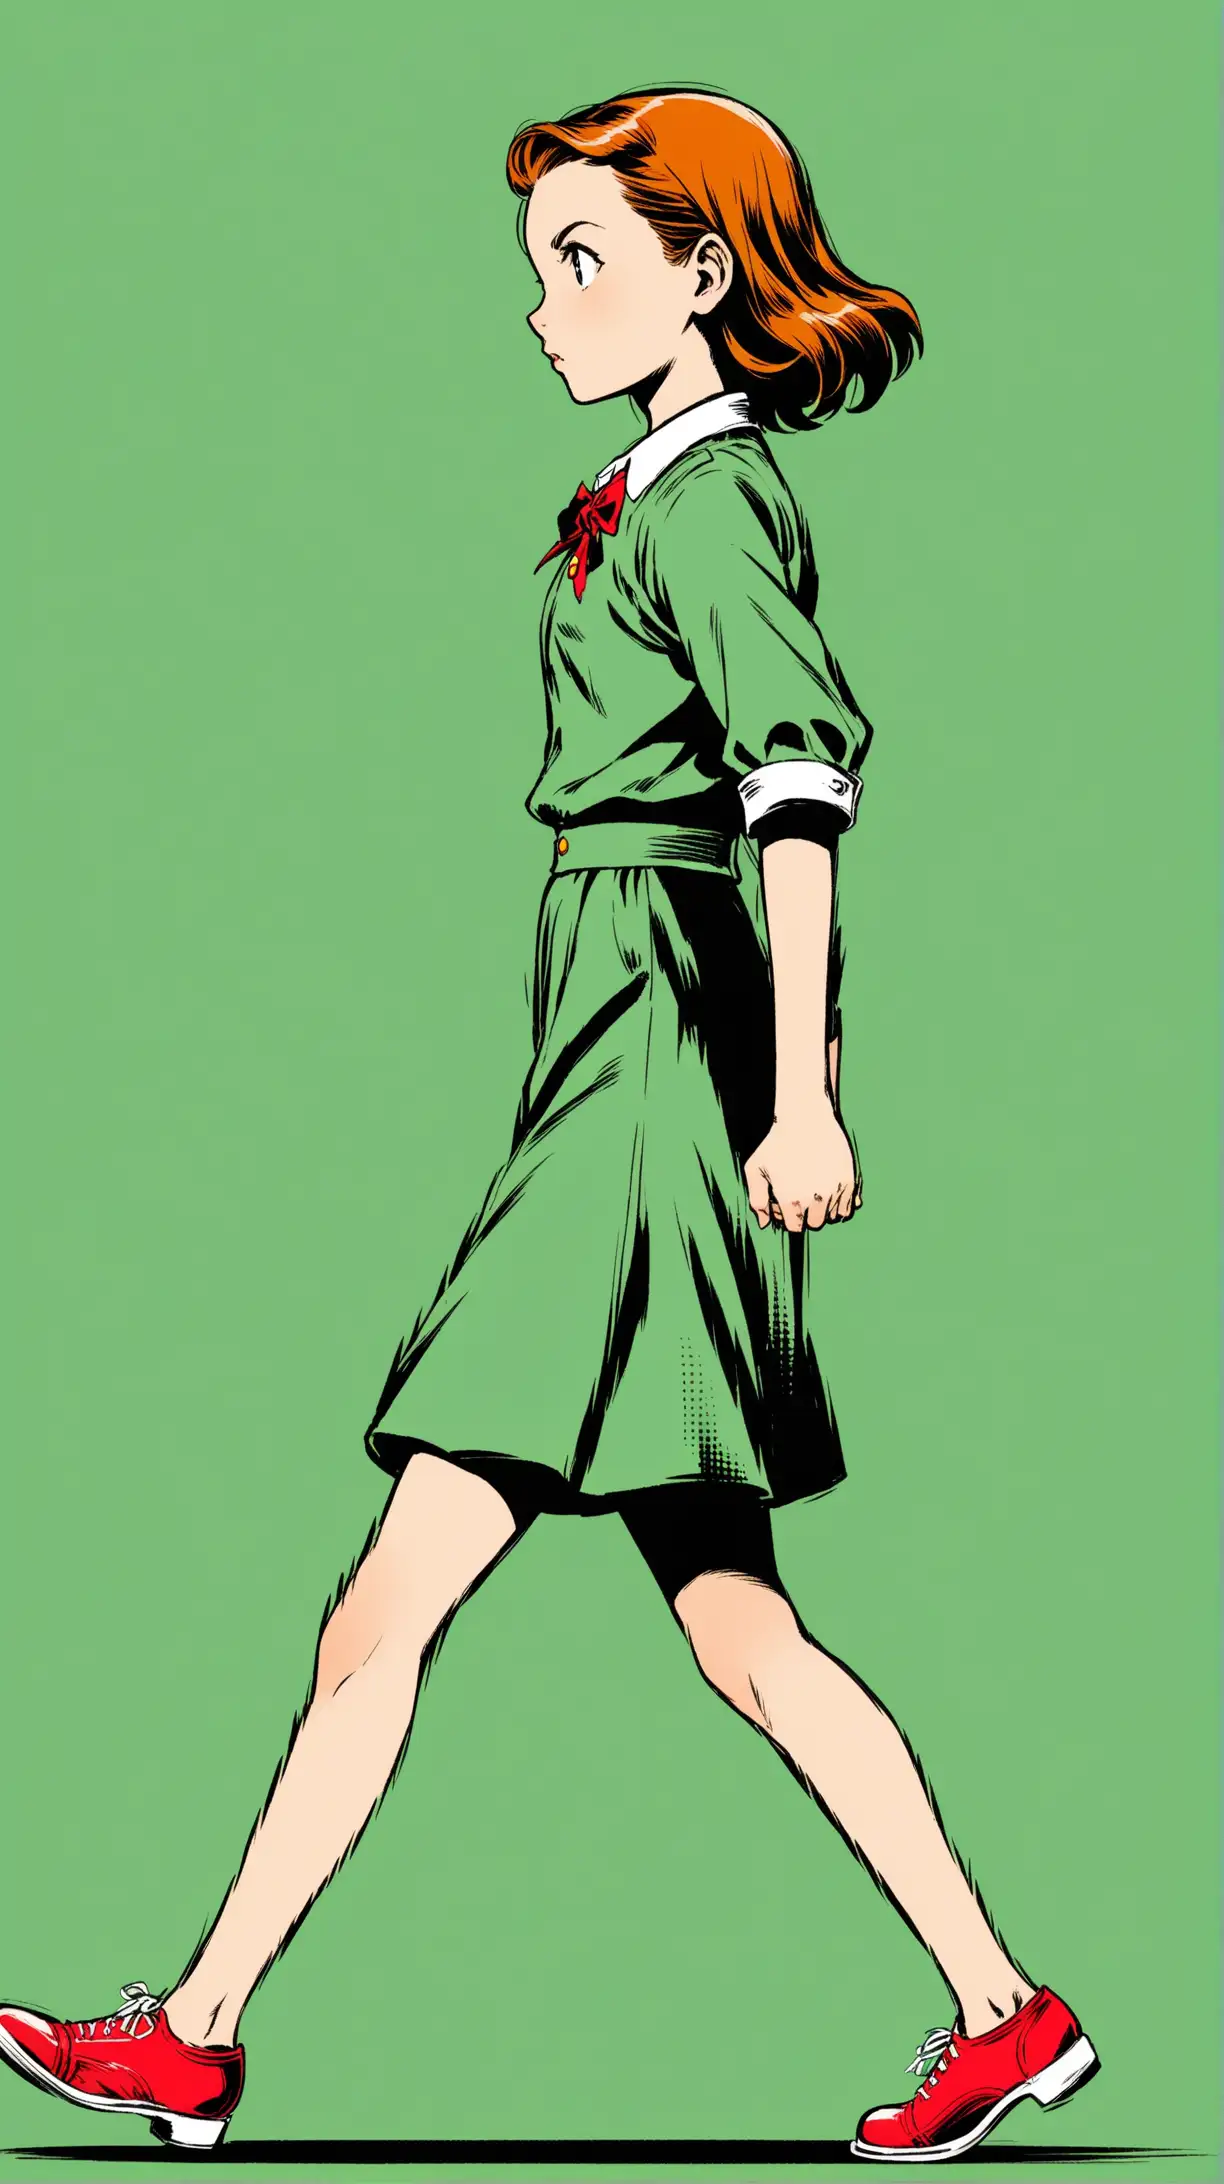 1940s Intense Girl Walking Profile Portrait in Comic Style